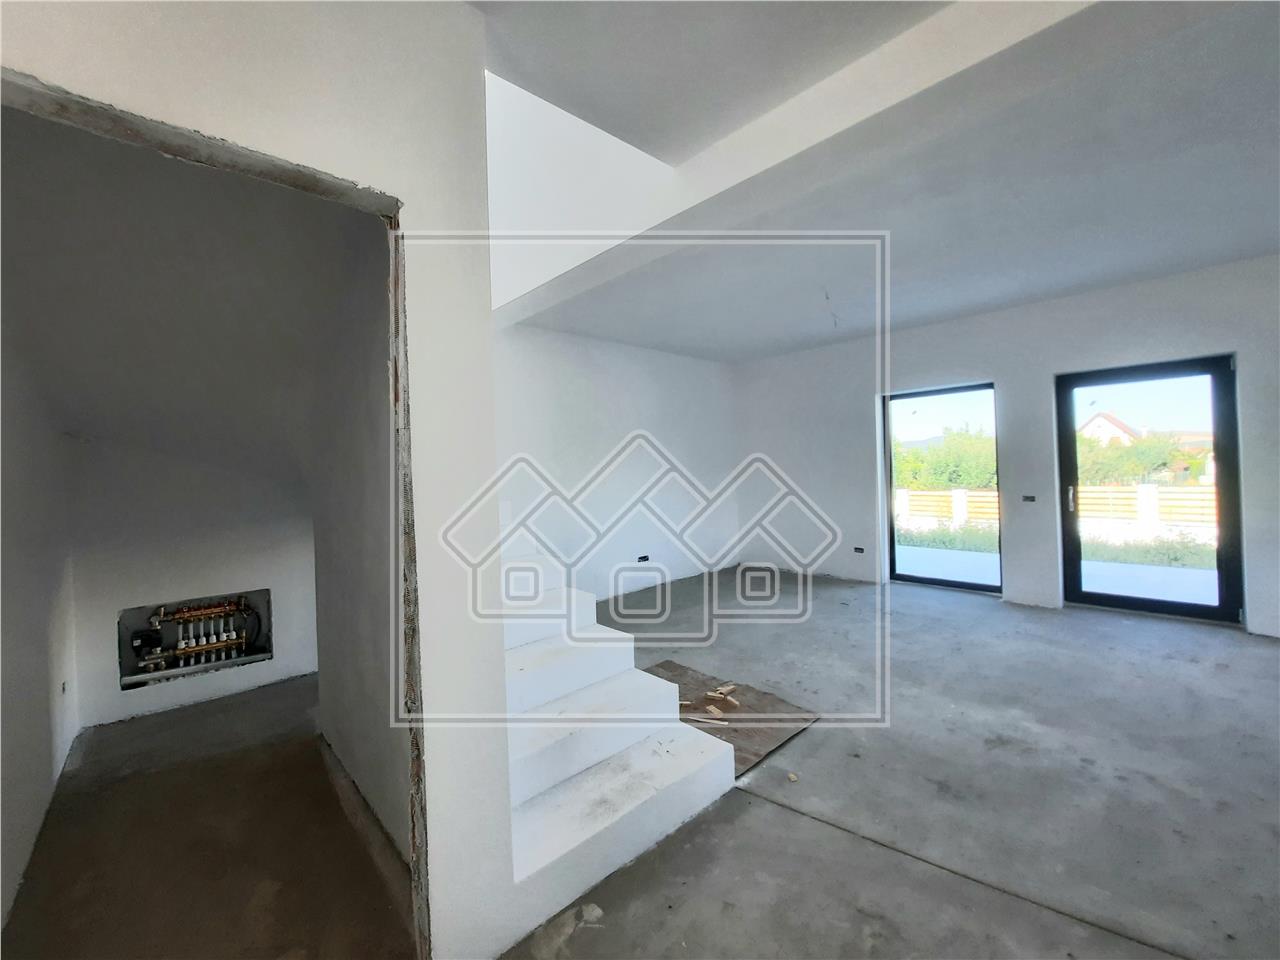 Haus zum Verkauf in Alba - 103 Quadratmeter - 5 Zimmer - Terrasse